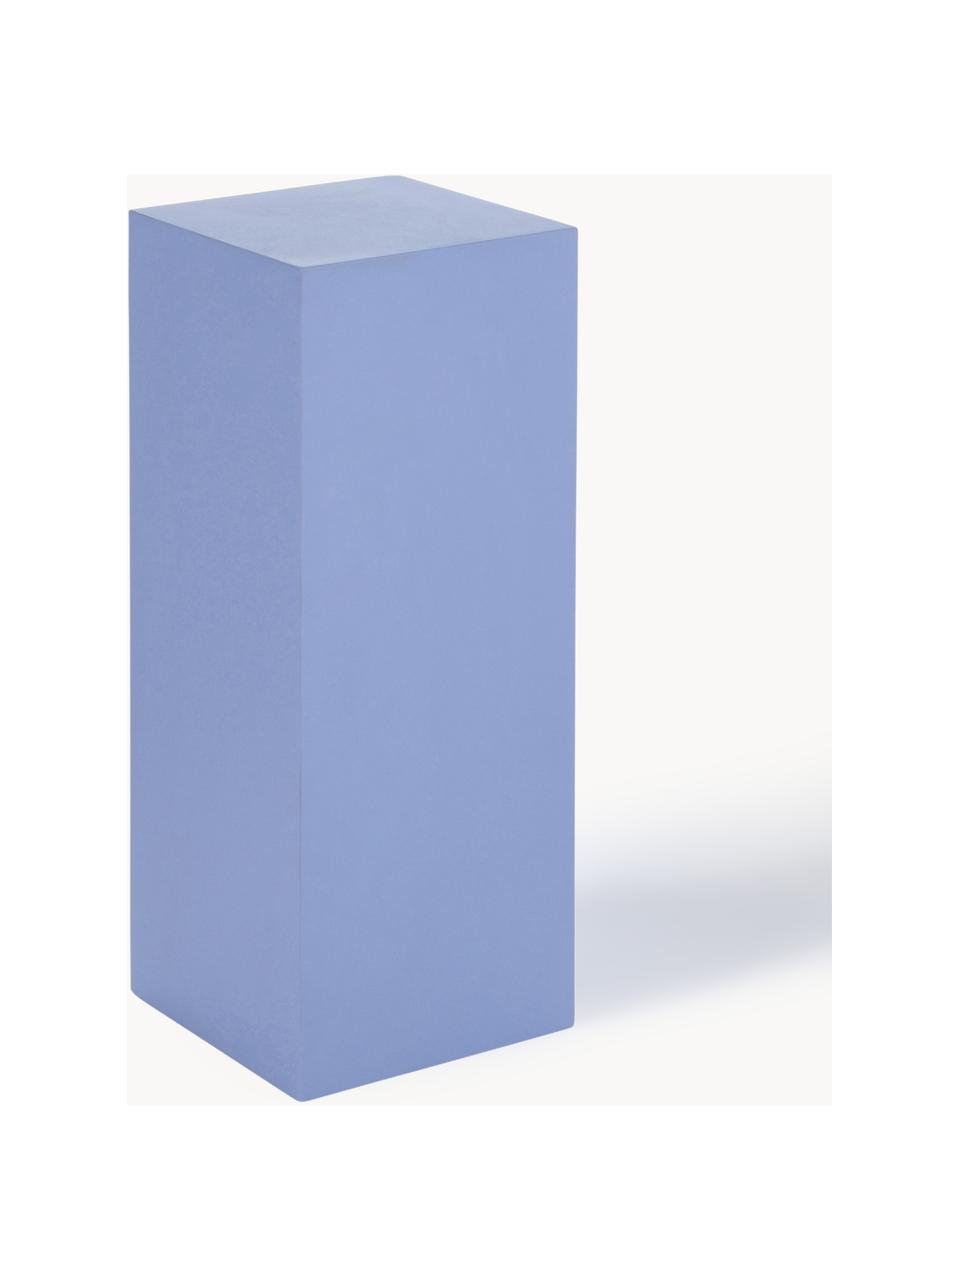 Dekorativní sloup Smash, dřevovláknitá deska střední hustoty (MDF), Modrá, Š 20 cm, V 50 cm